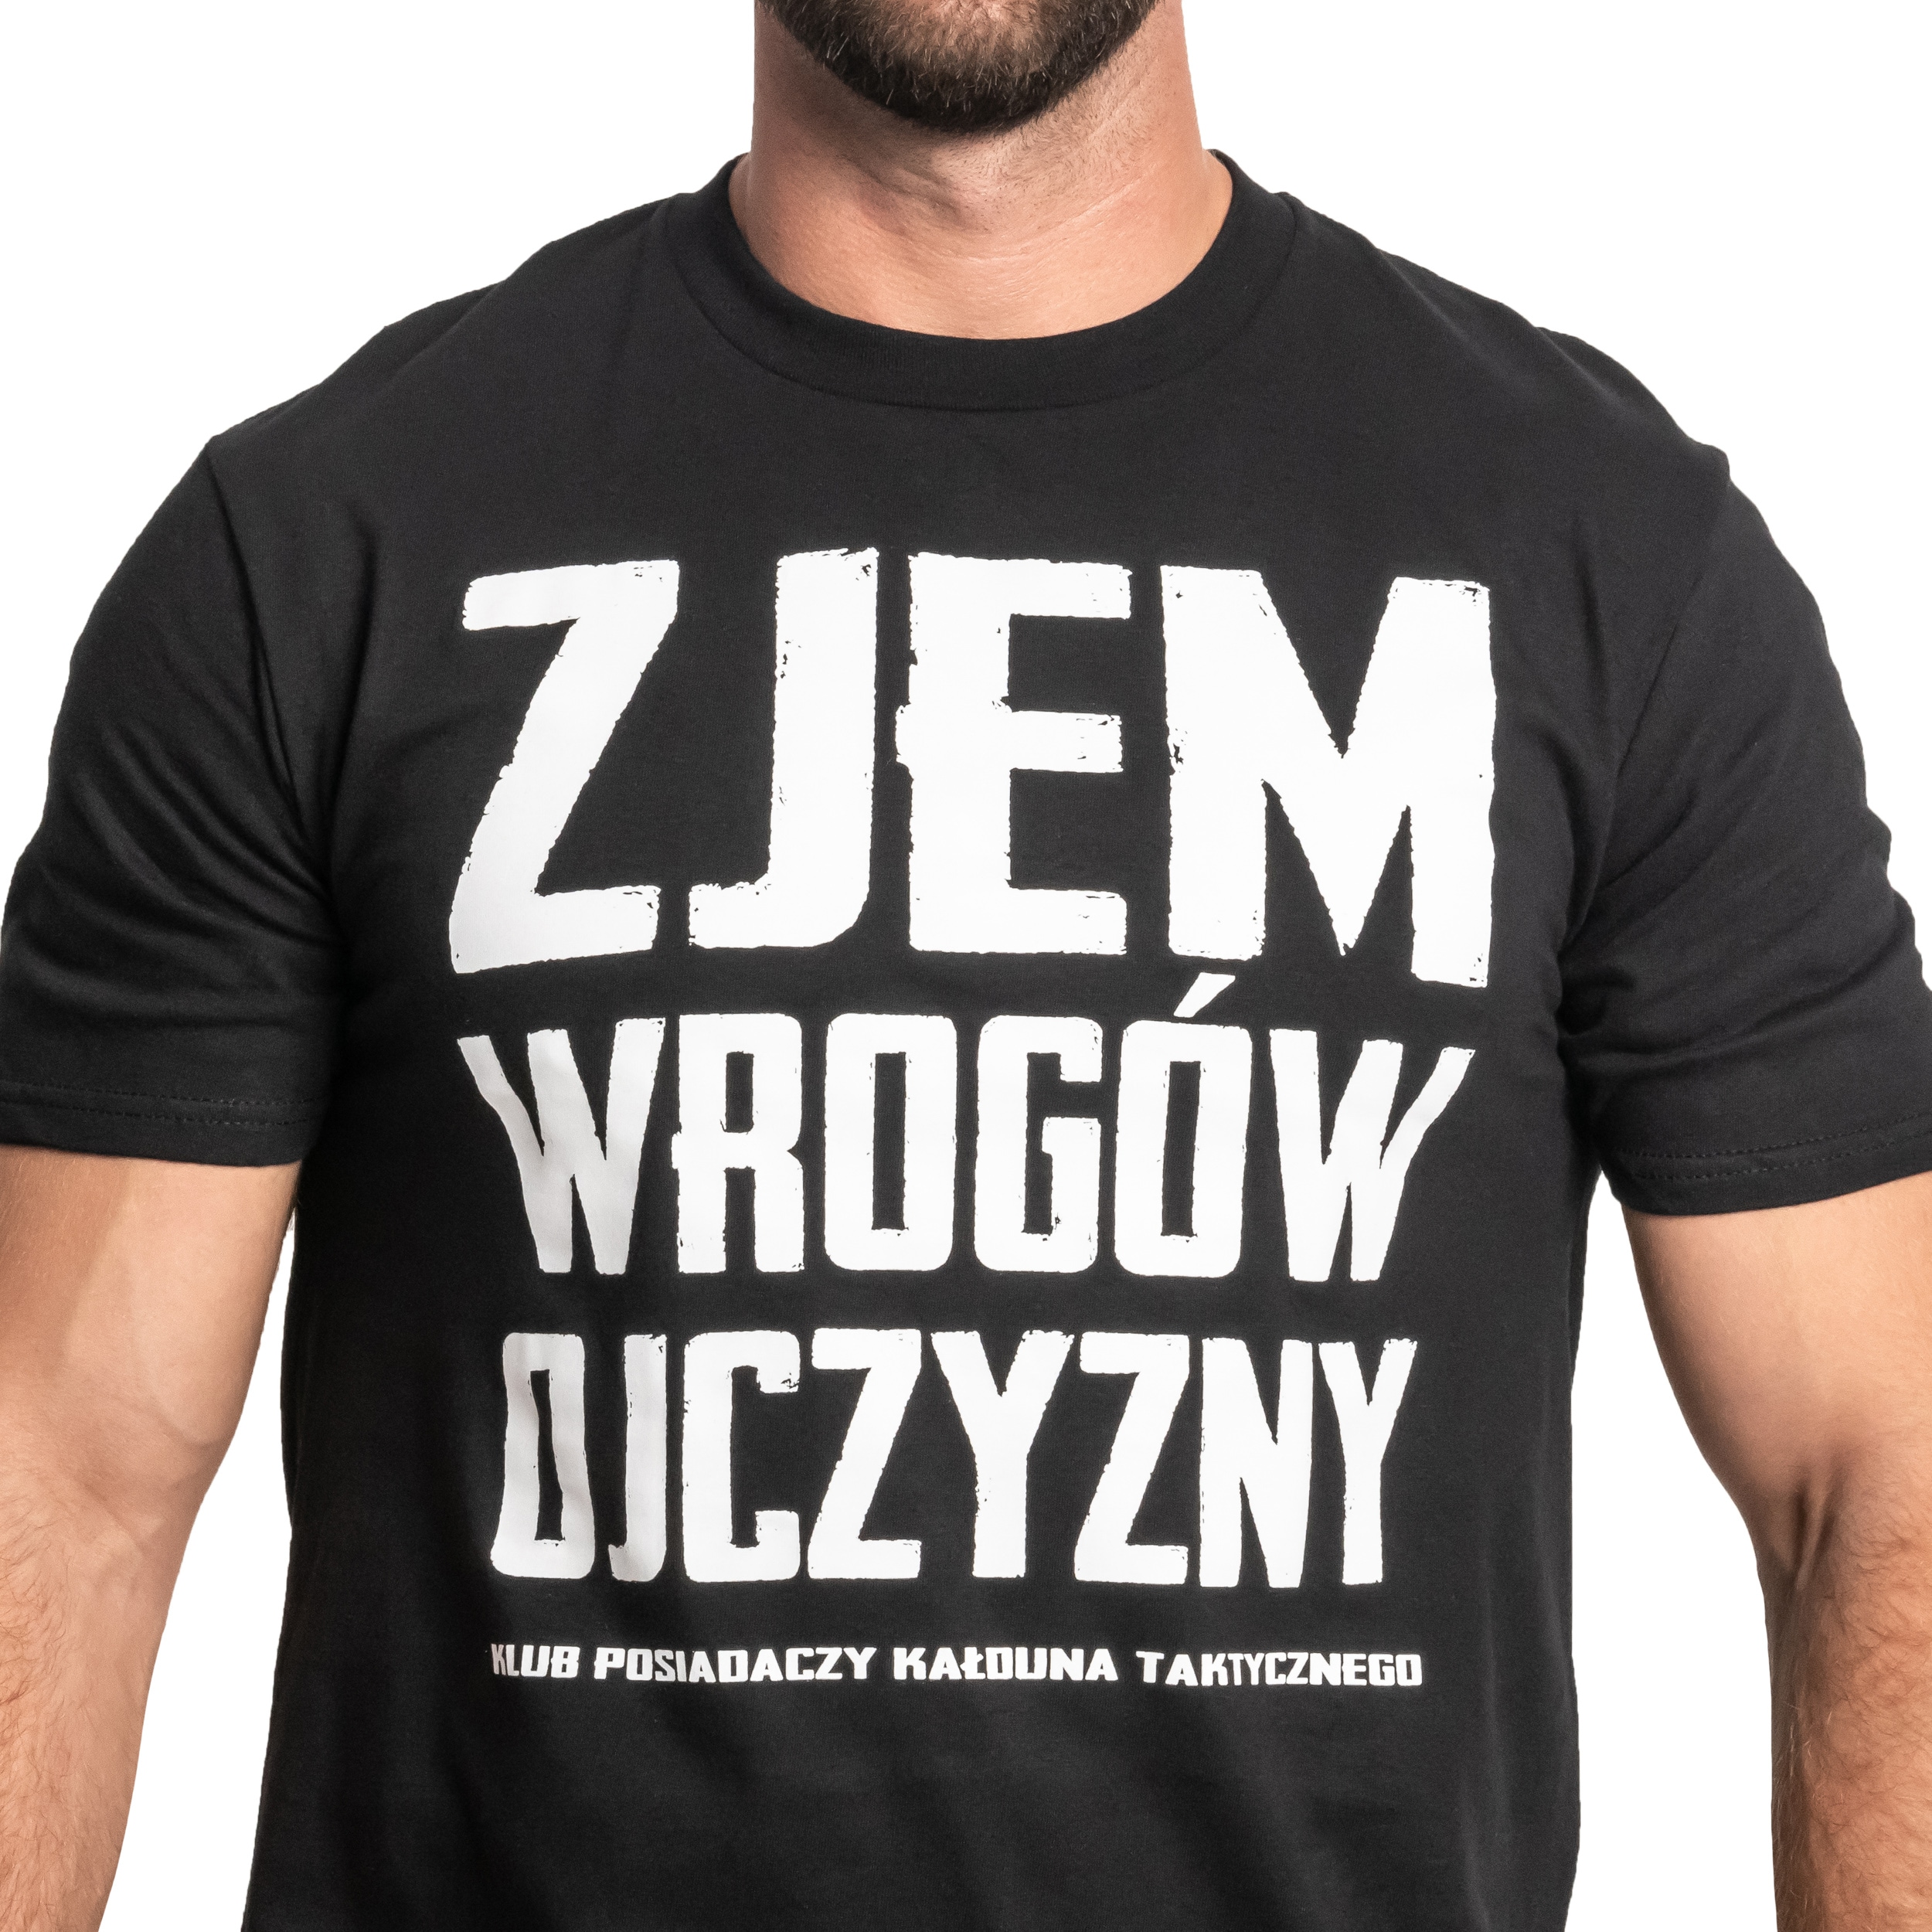 Футболка T-shirt Kałdun Zjem Wrogów Ojczyzny - Чорна